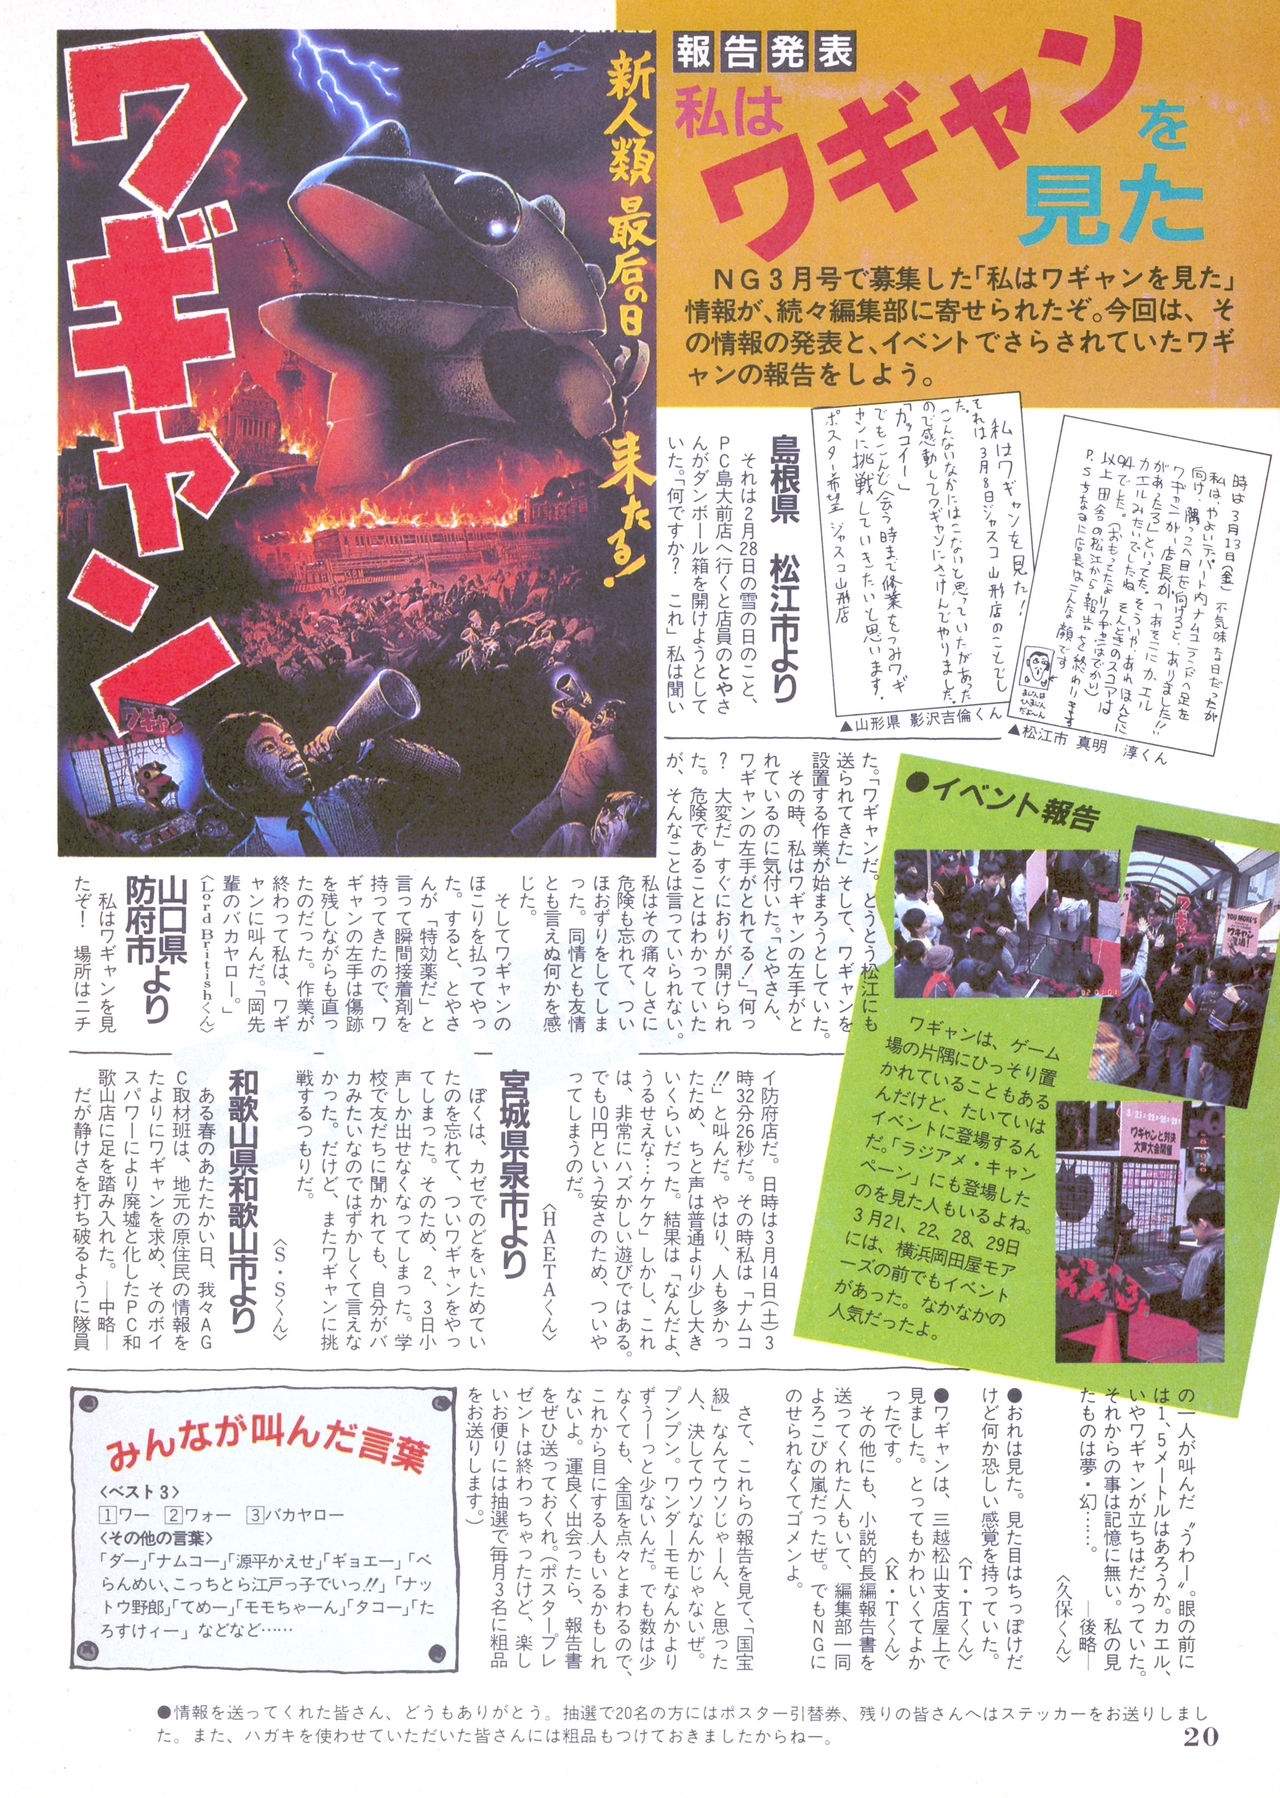 NG Namco Community Magazine 07 19